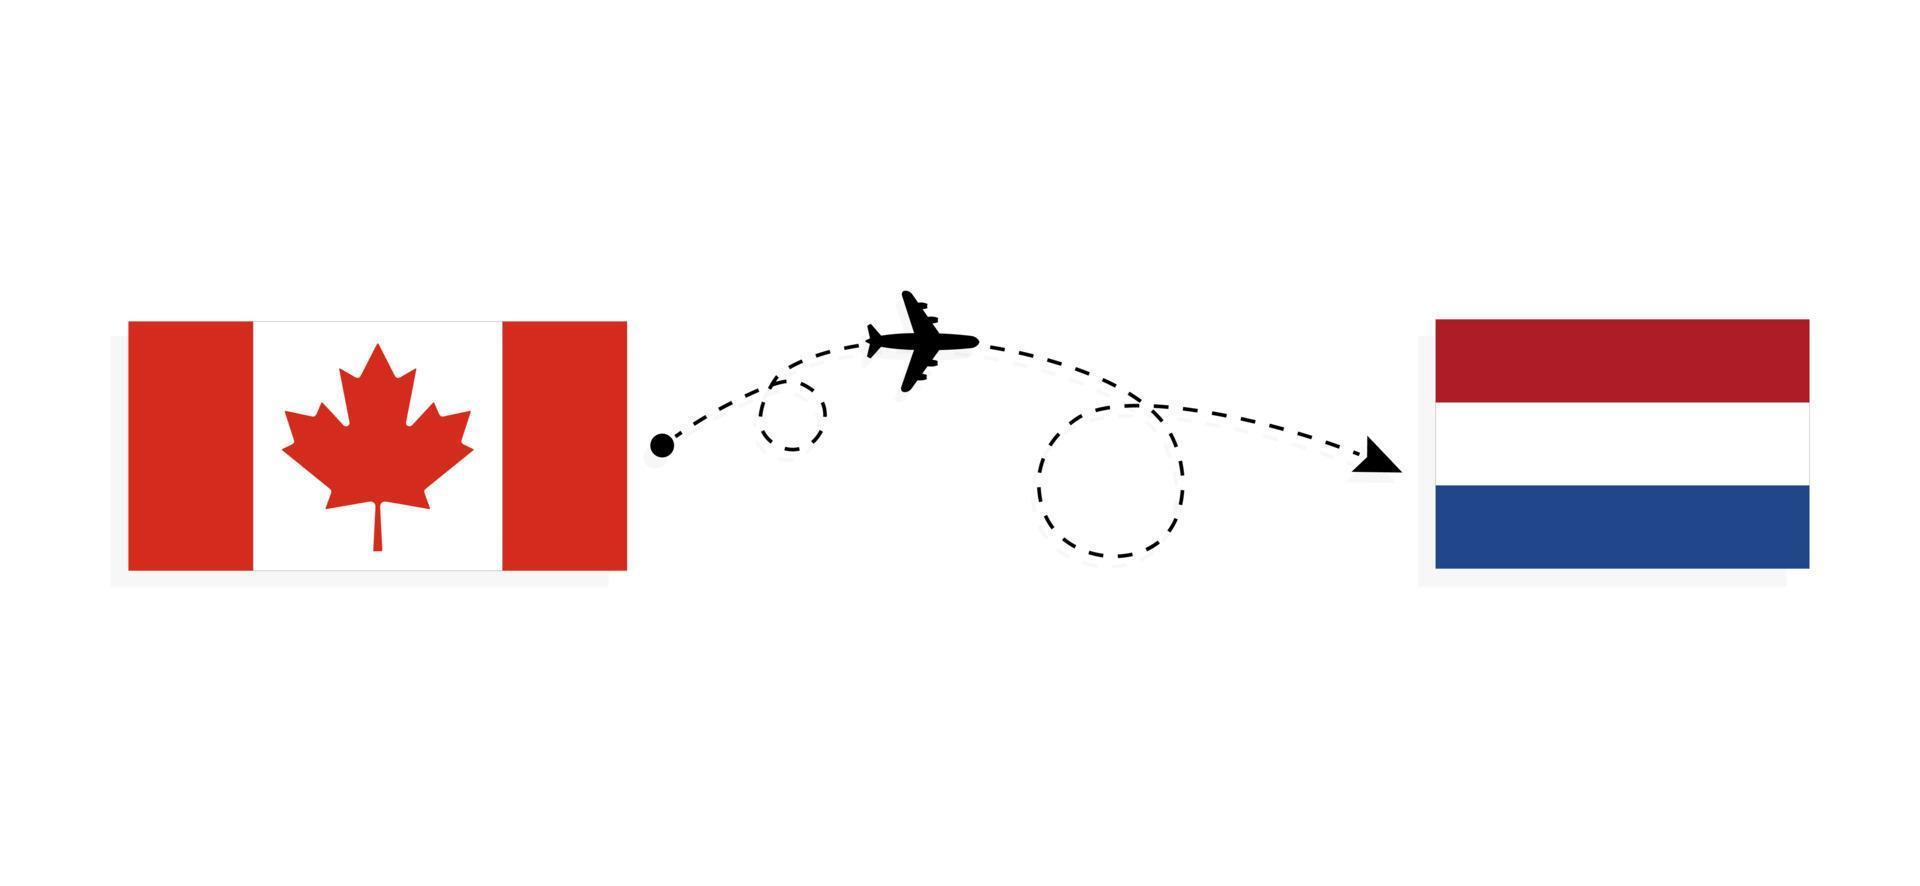 vuelo y viaje desde canadá a países bajos en avión de pasajeros concepto de viaje vector